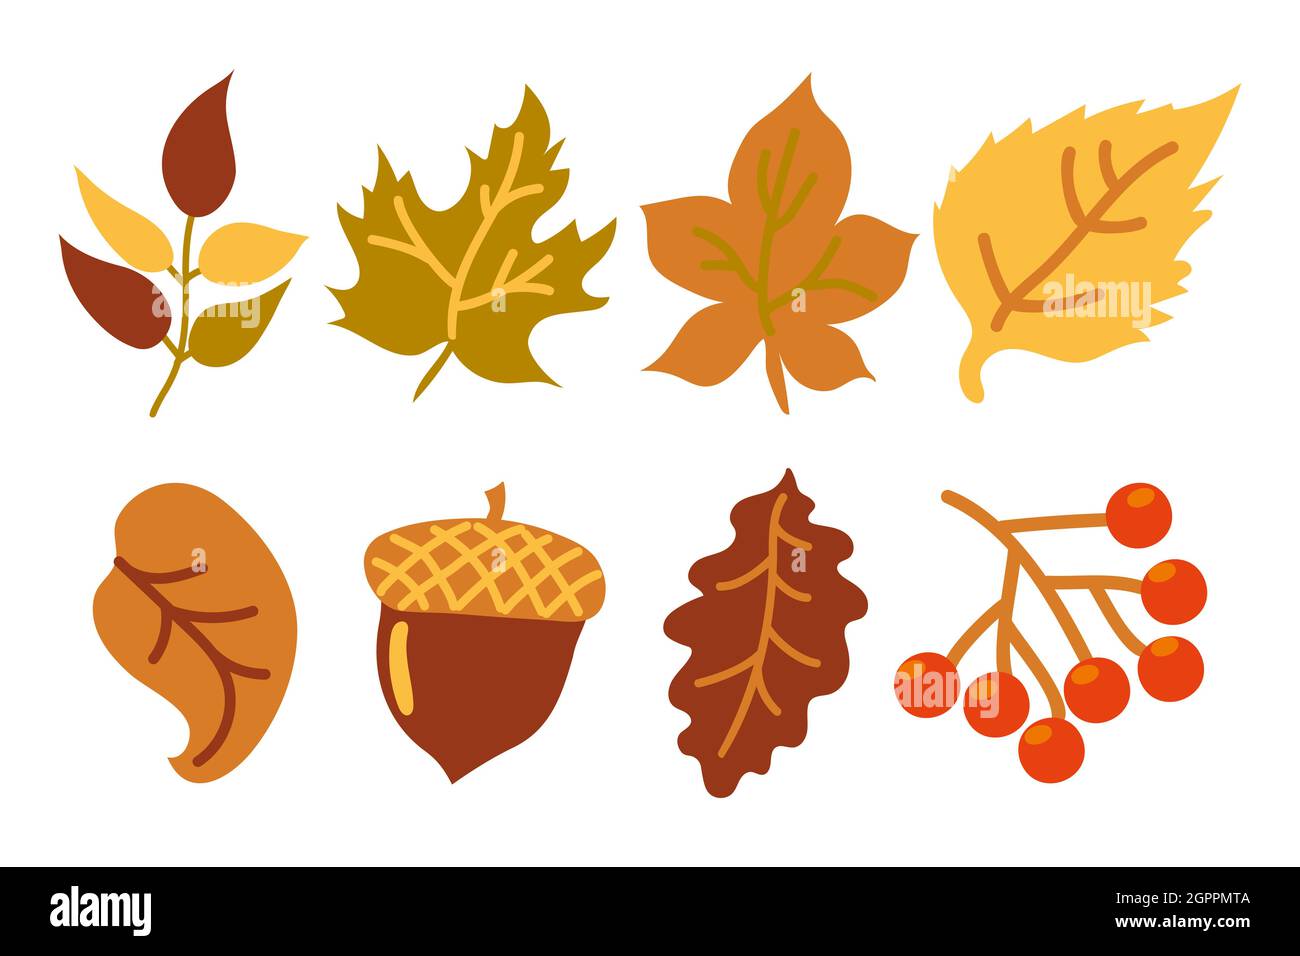 Set di foglie di colore giallo e arancio autunnali, un acorno e un ramo con bacche rosse. Foglie d'autunno. Foglie di quercia, acero, frassino, betulla, rowan e tiglio Illustrazione Vettoriale